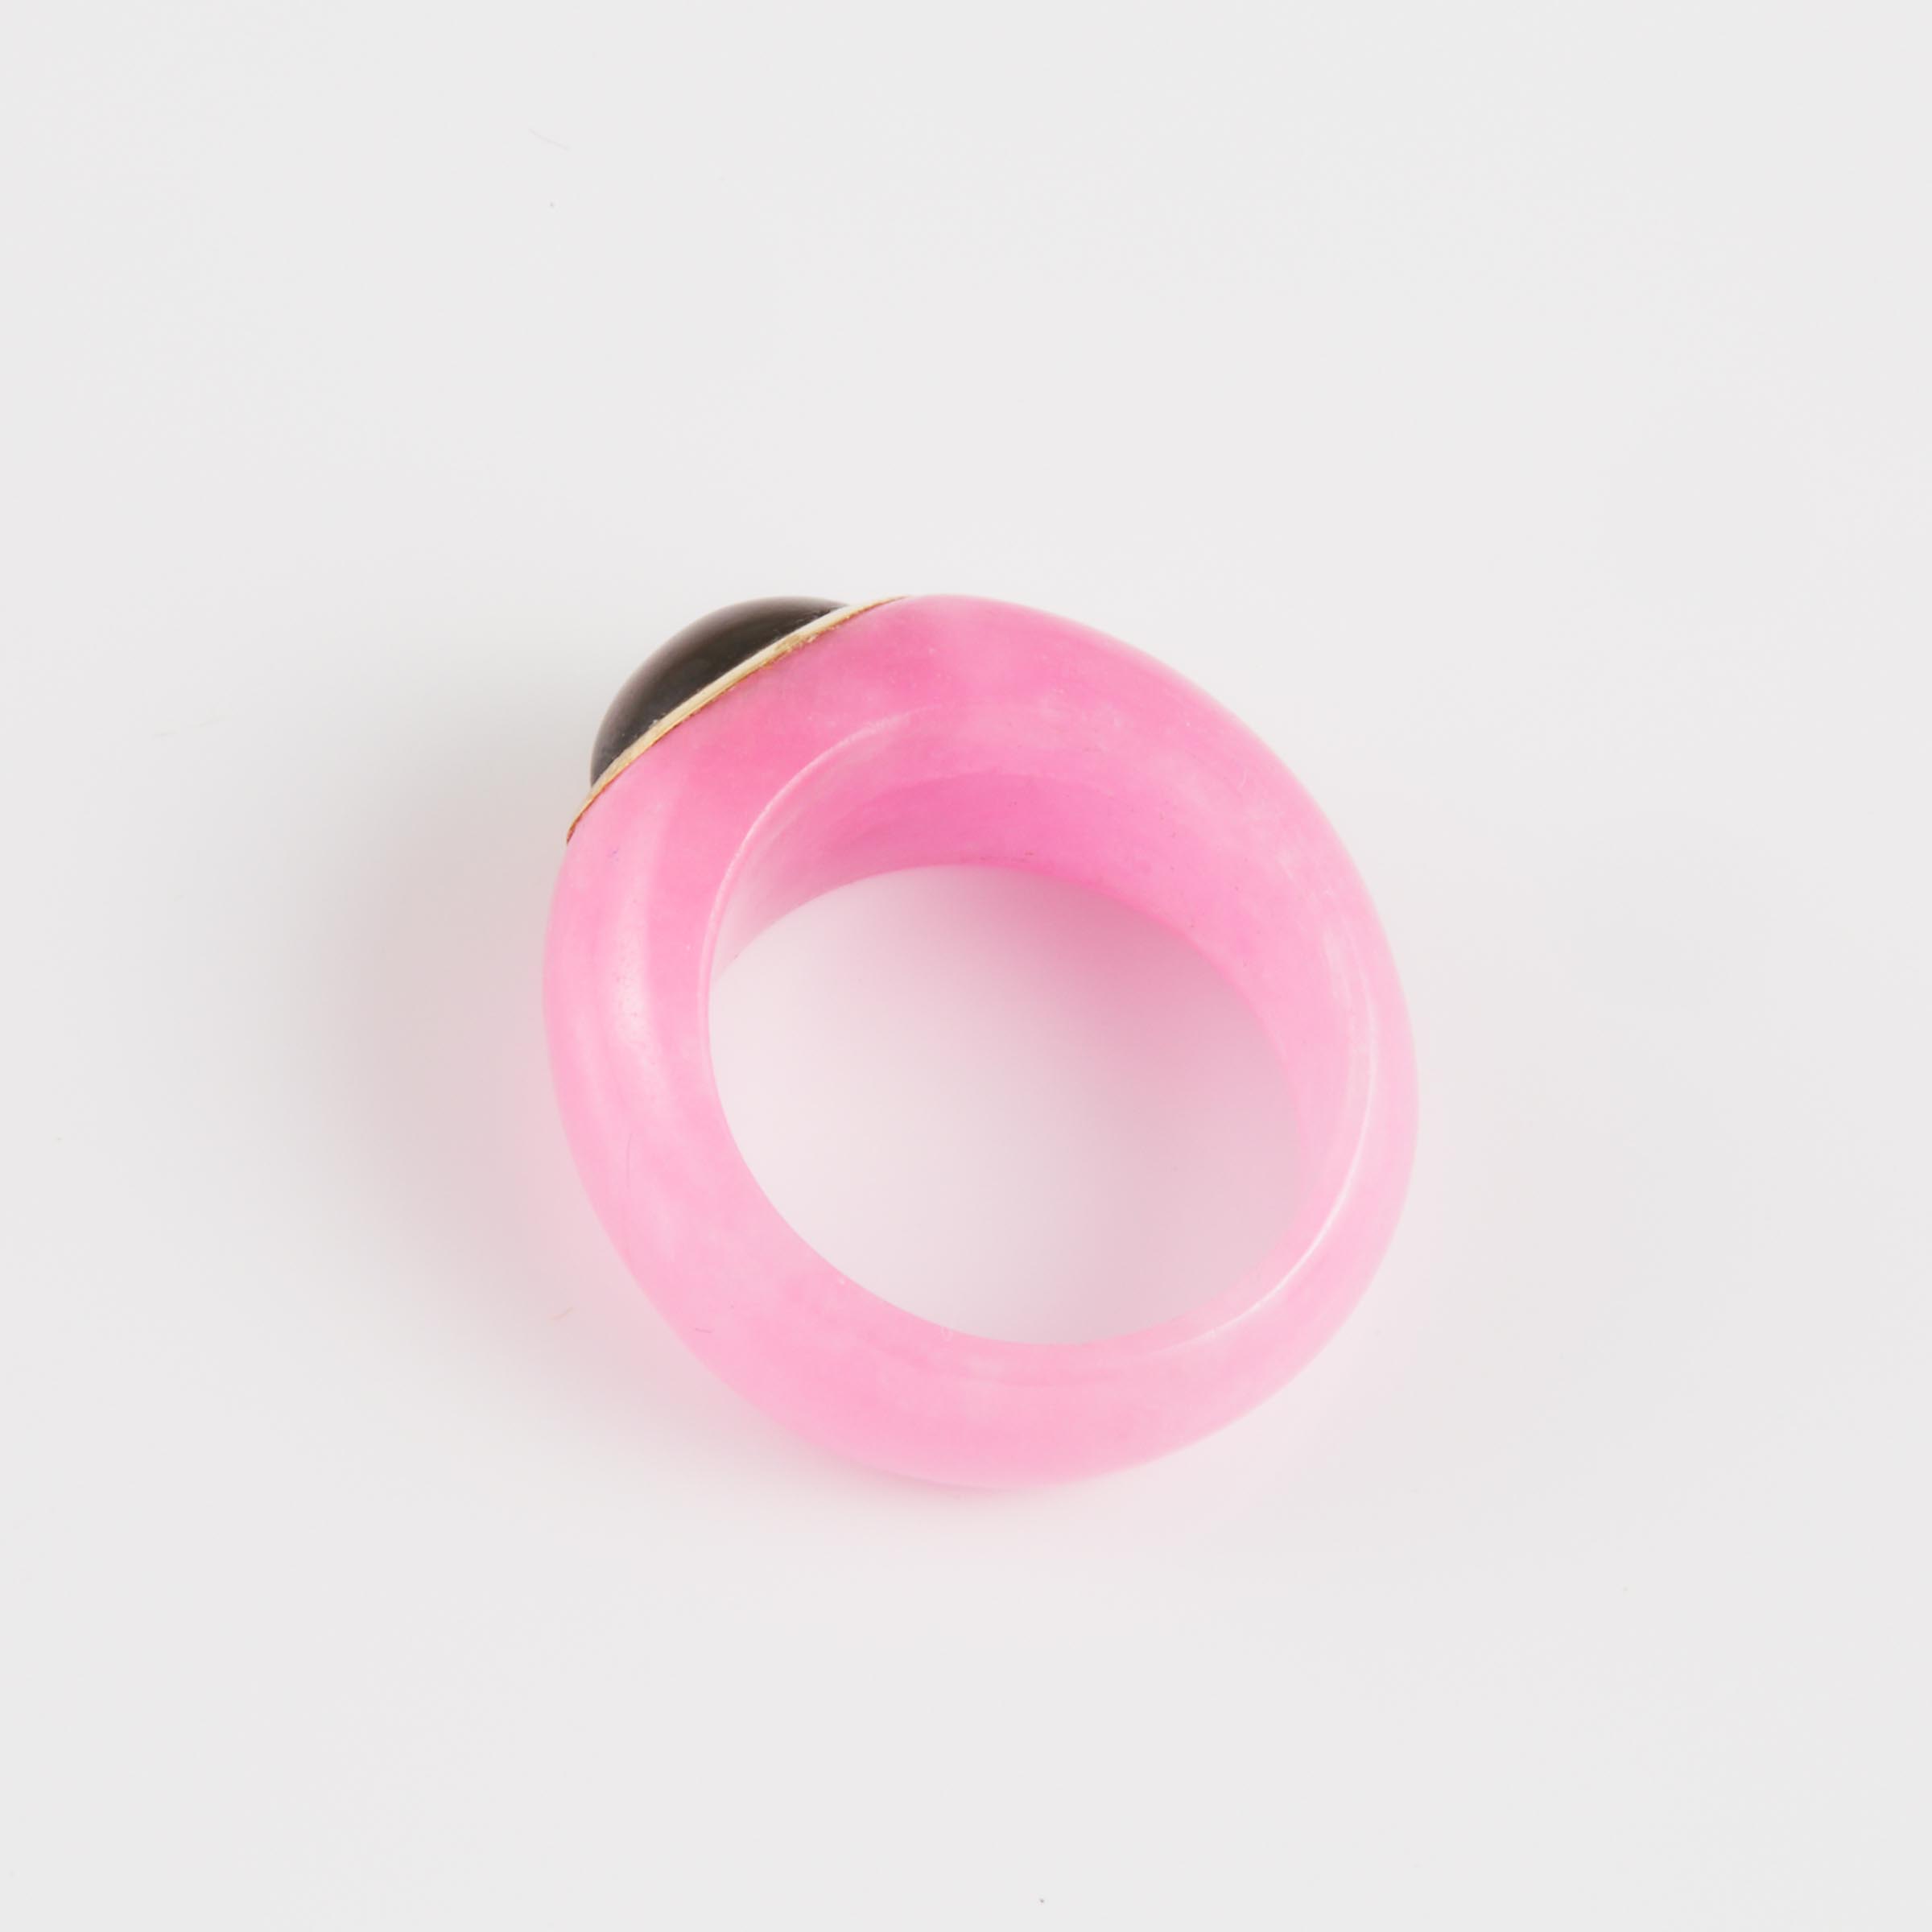 Pink Hardstone Ring